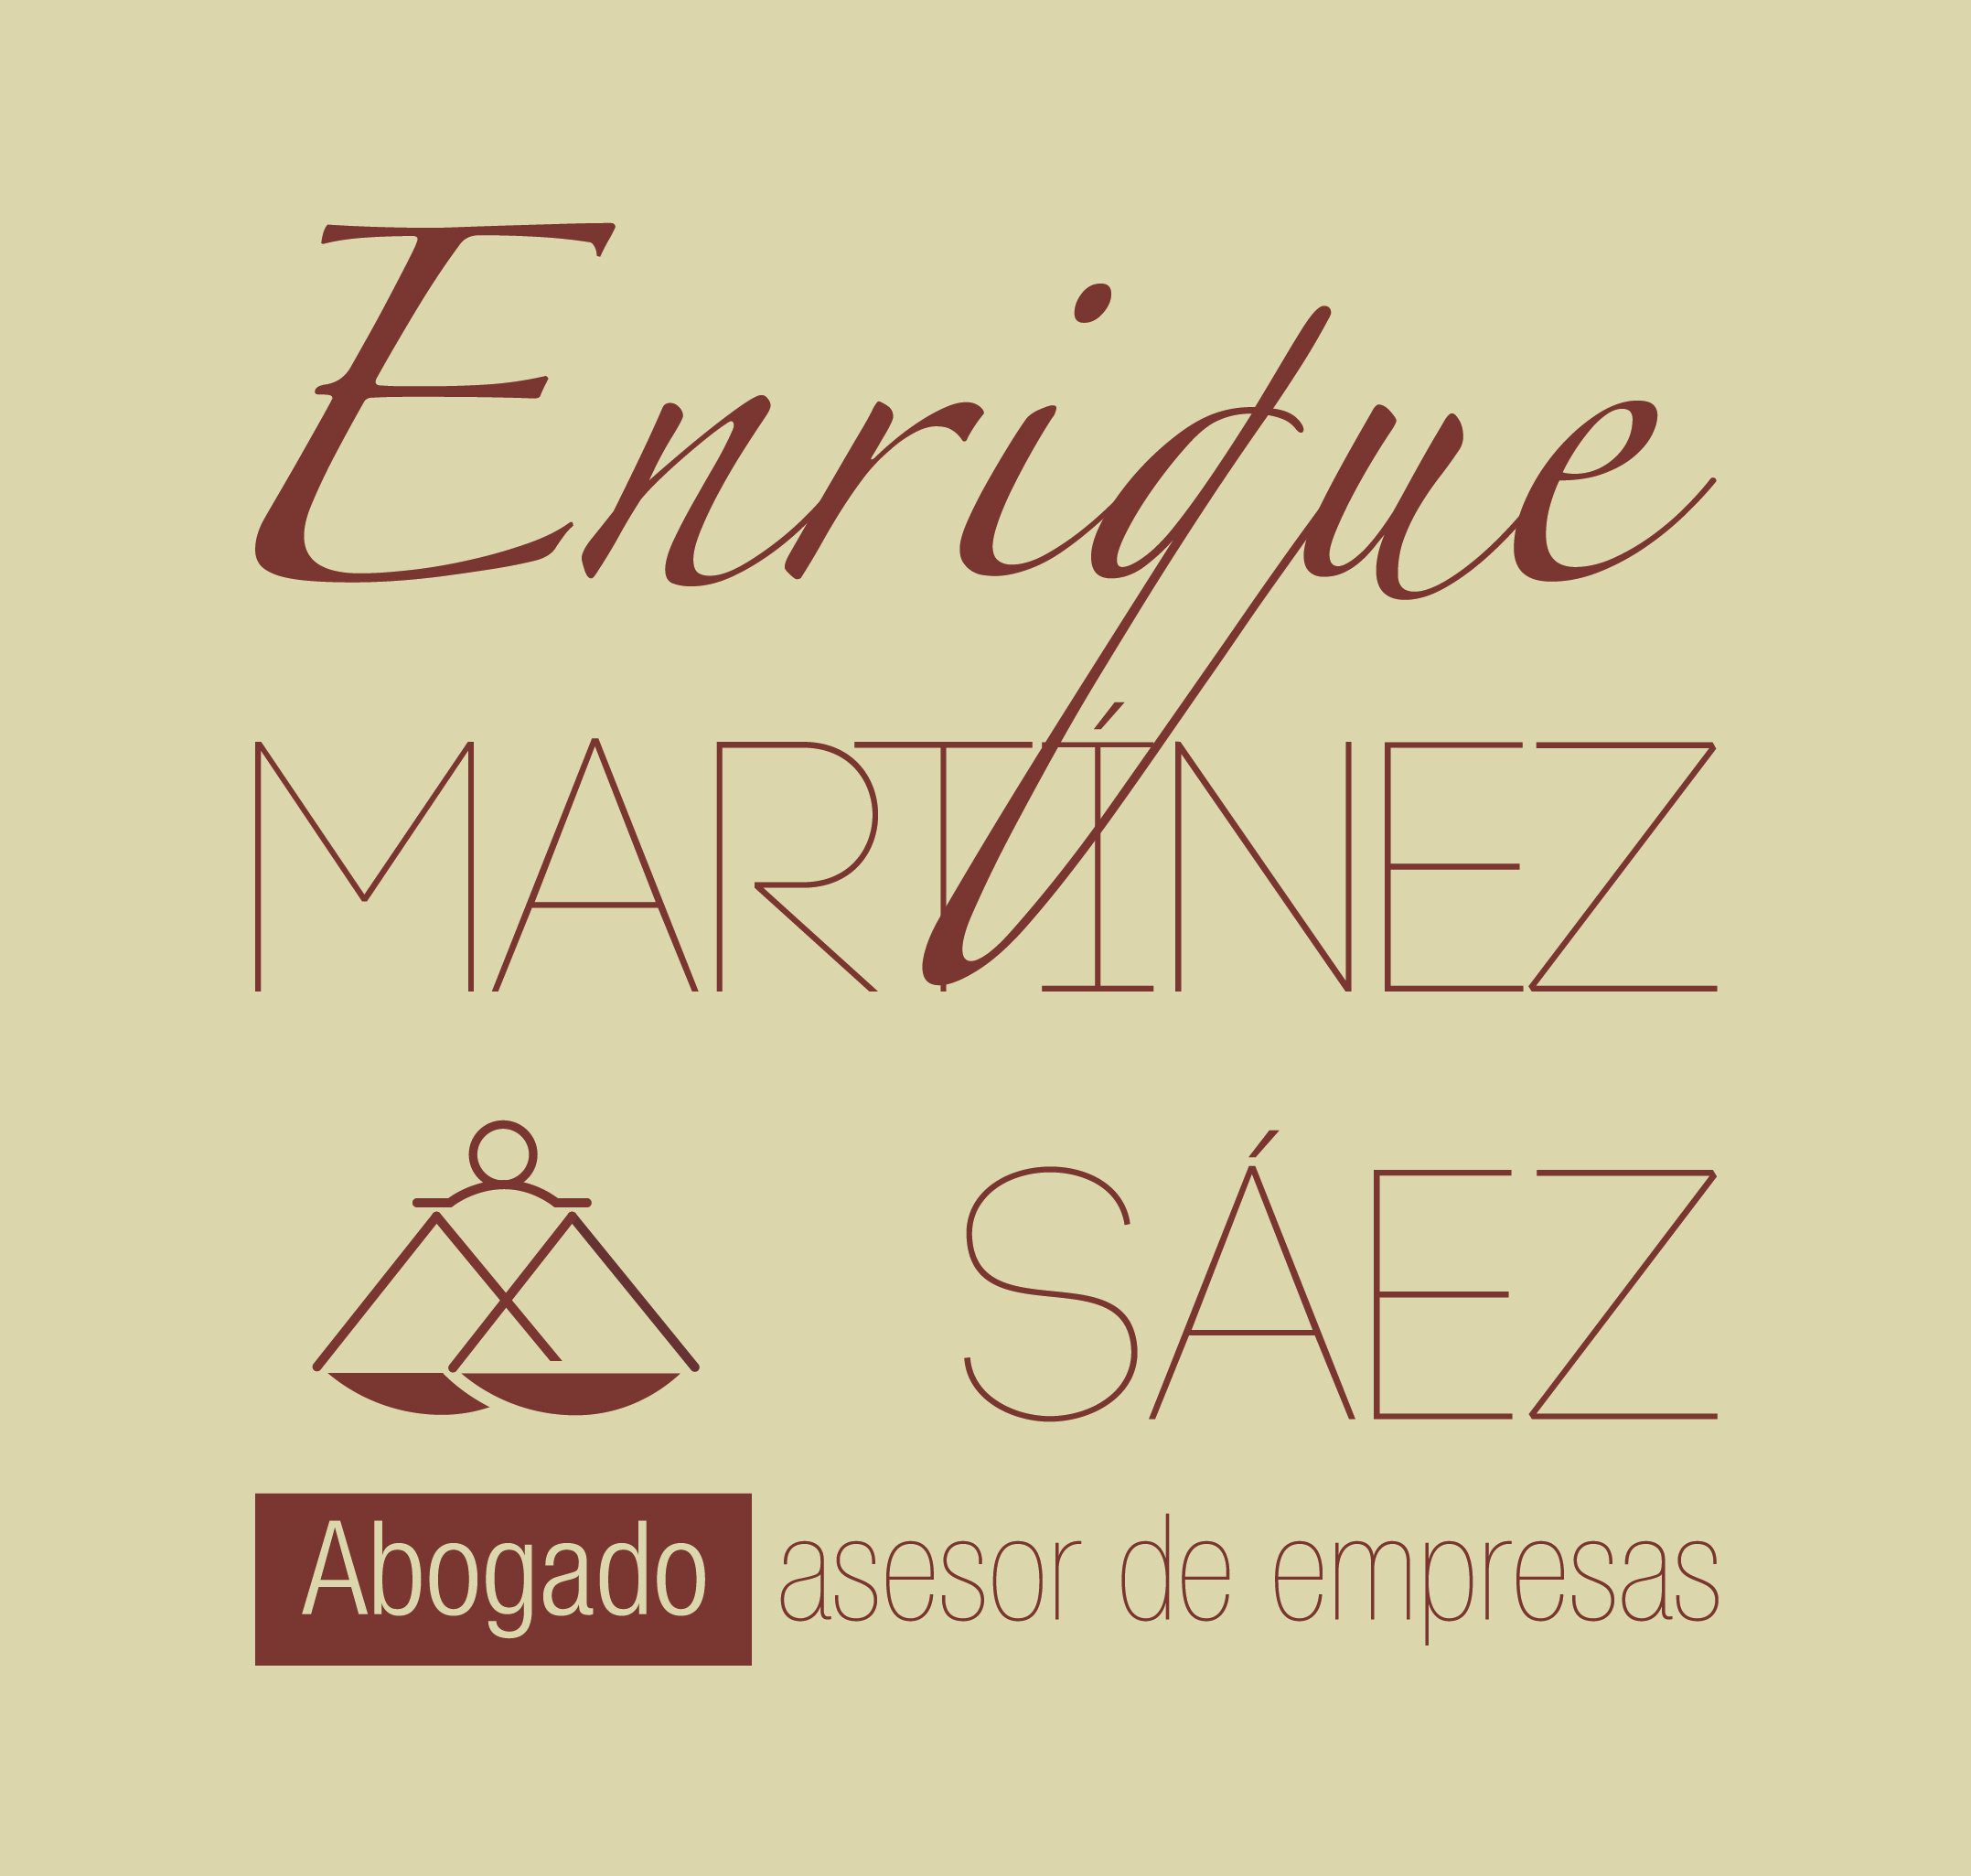 Abogado Alberic - Enrique Martinez 661208563